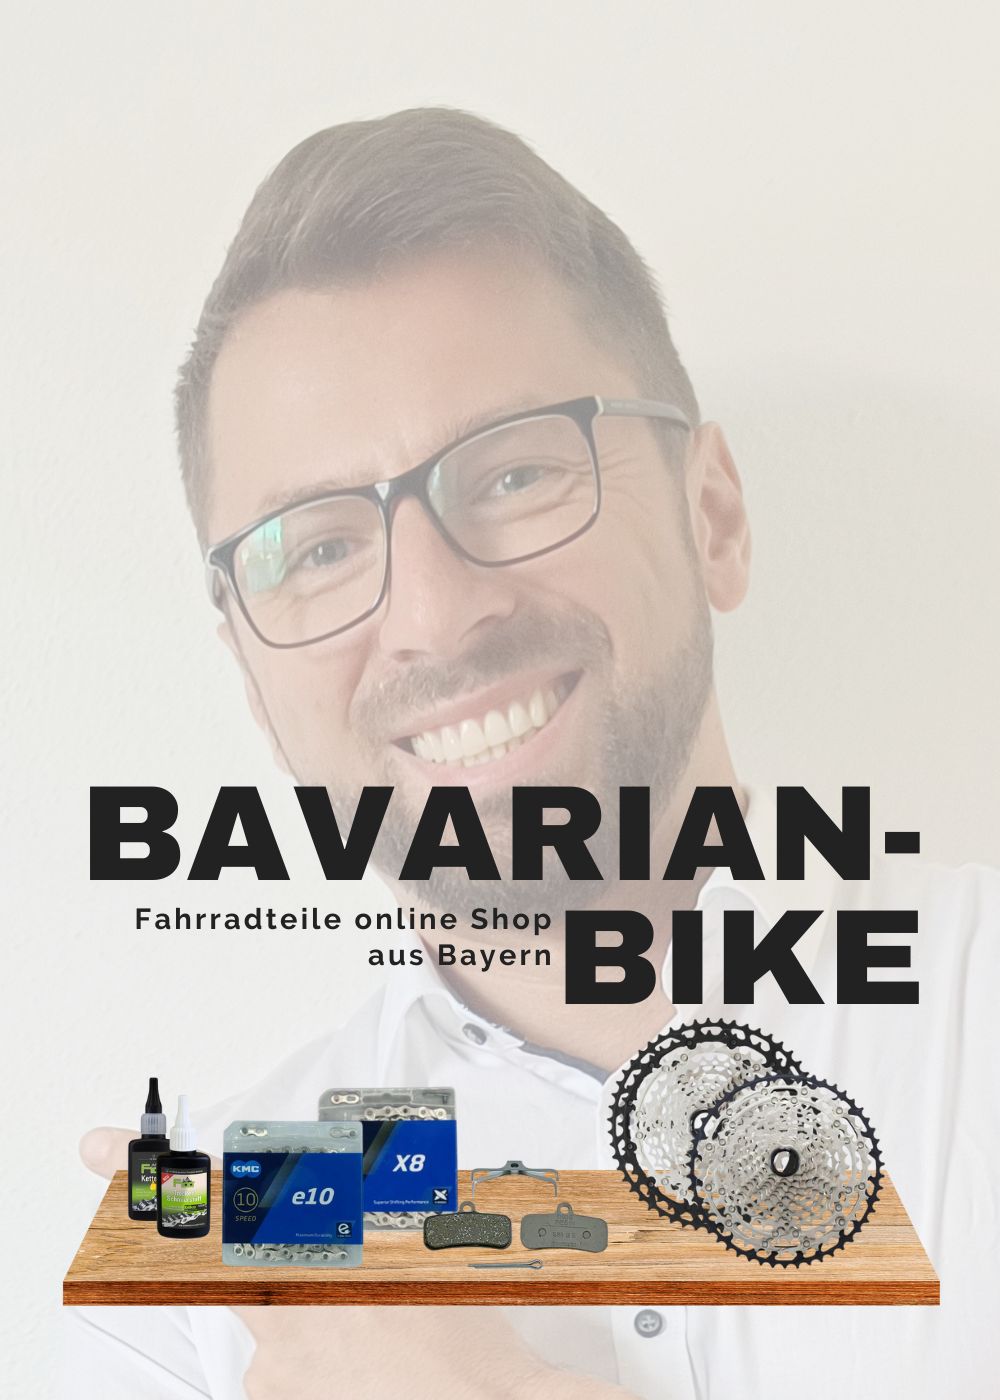 Bavarian-Bike, es-Bike aus Vohenstrauss. Fahrradersatzteile online shop aus bayern